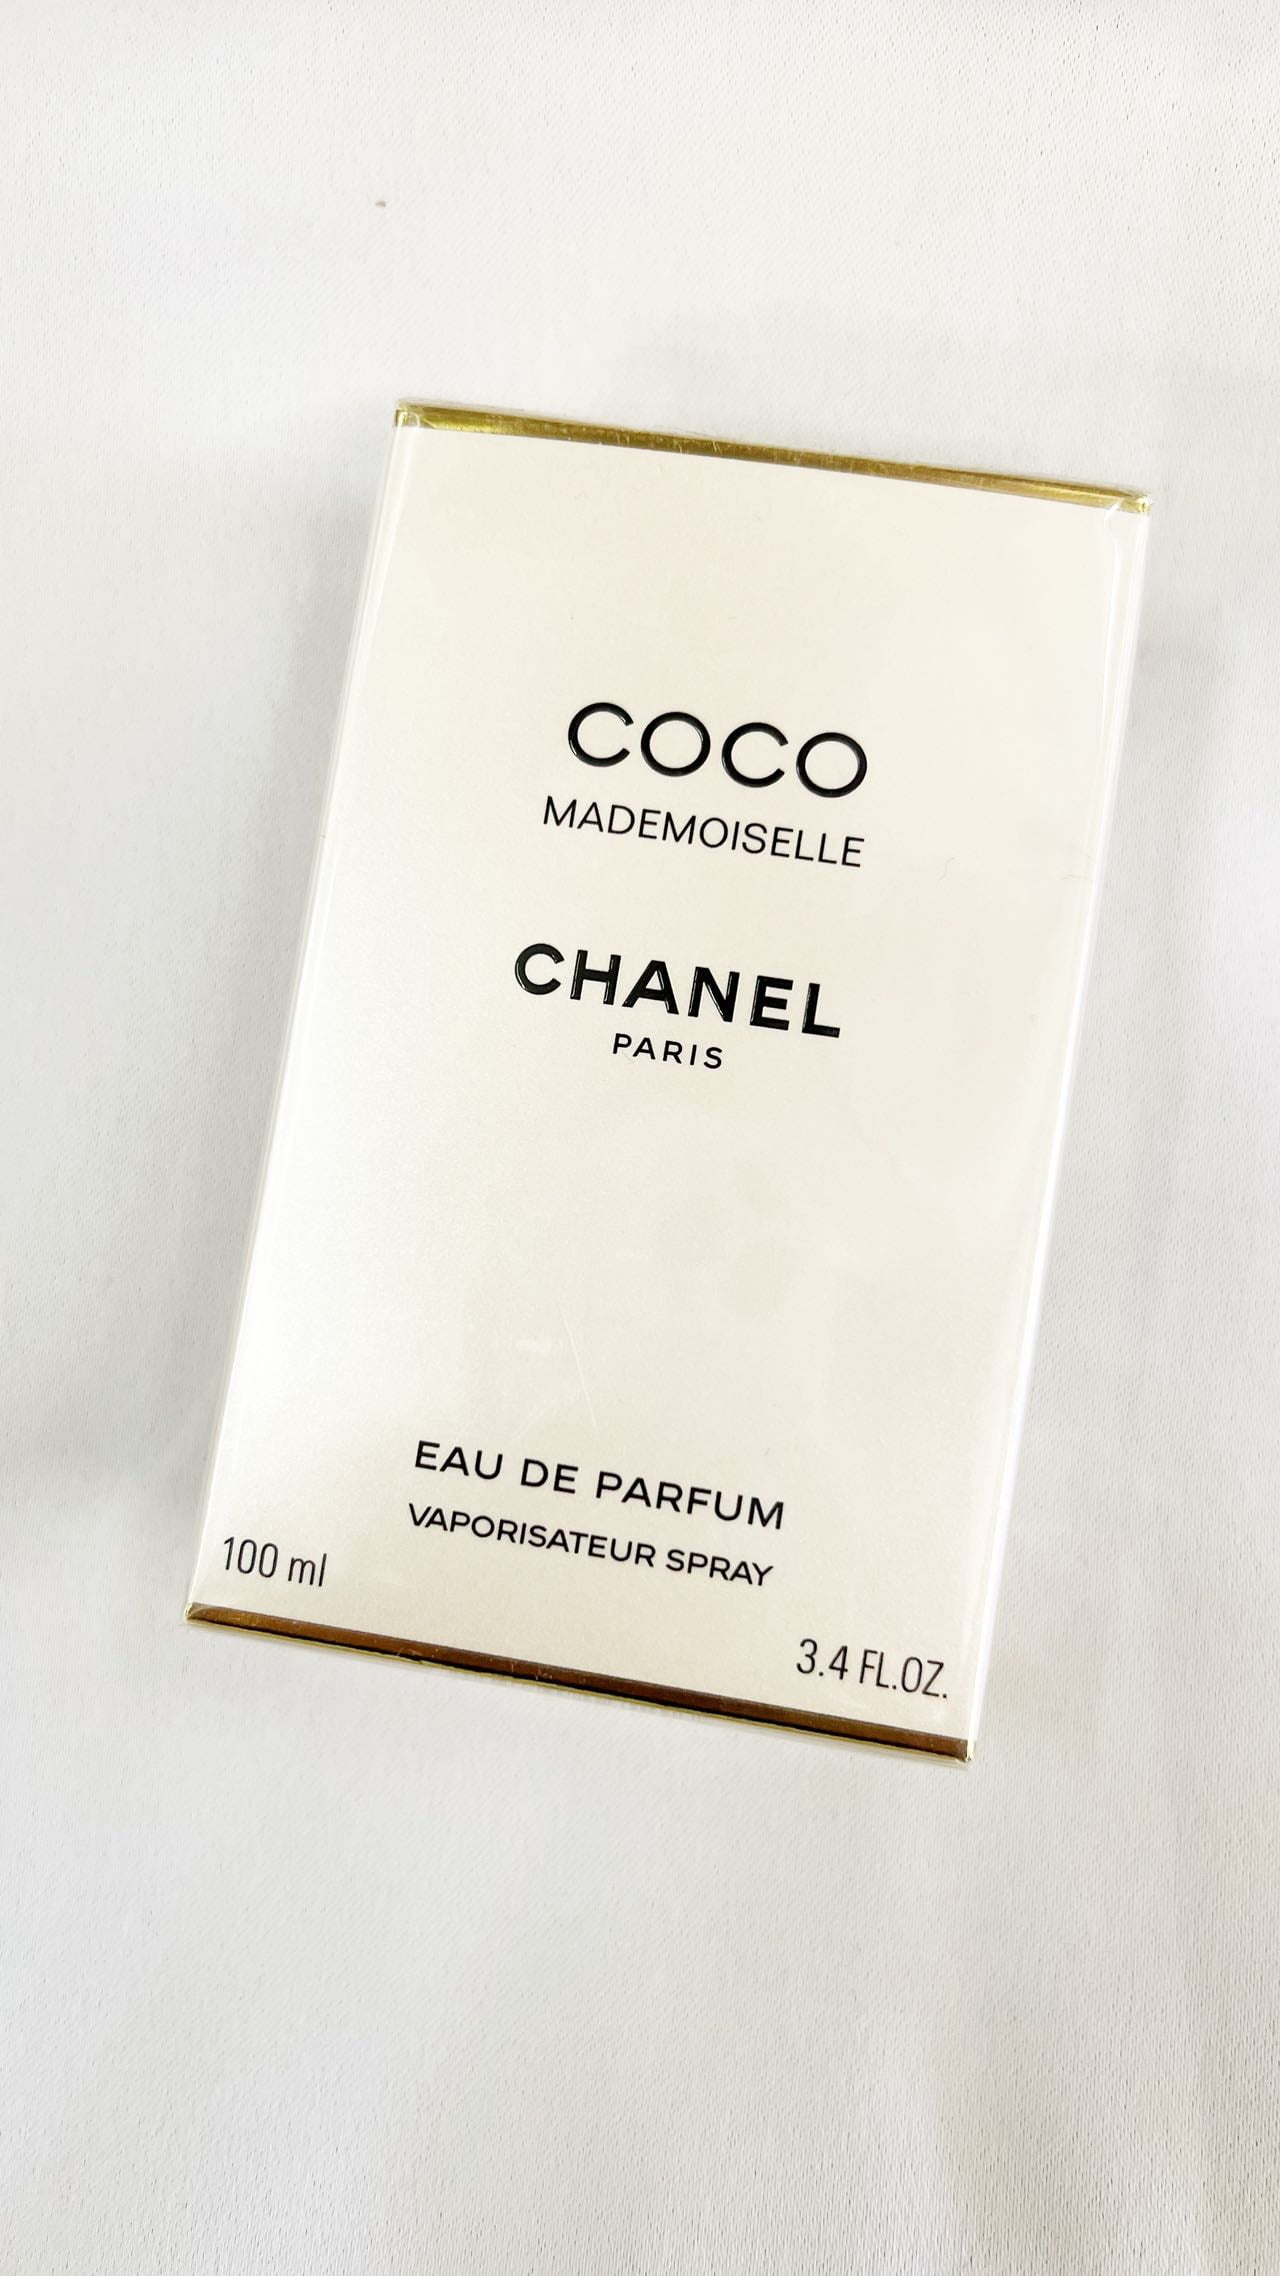 COCO MADEMOISELLE by Chanel Eau De Parfum Spray 3.4 oz / 100 ml